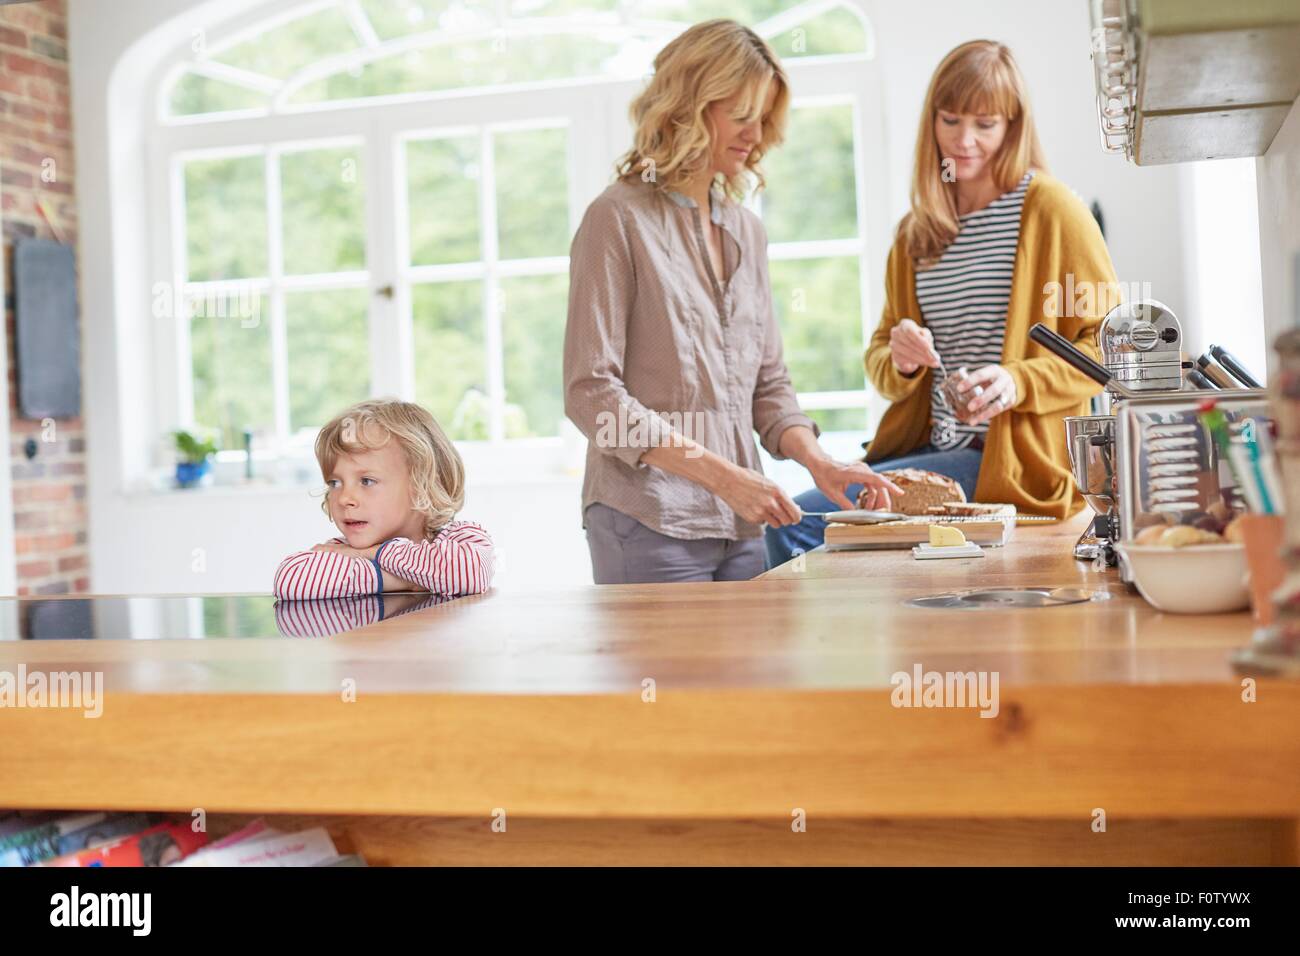 Zwei Frauen Zubereitung von Speisen in der Küche, während junge vom Küchentisch wartet Stockfoto